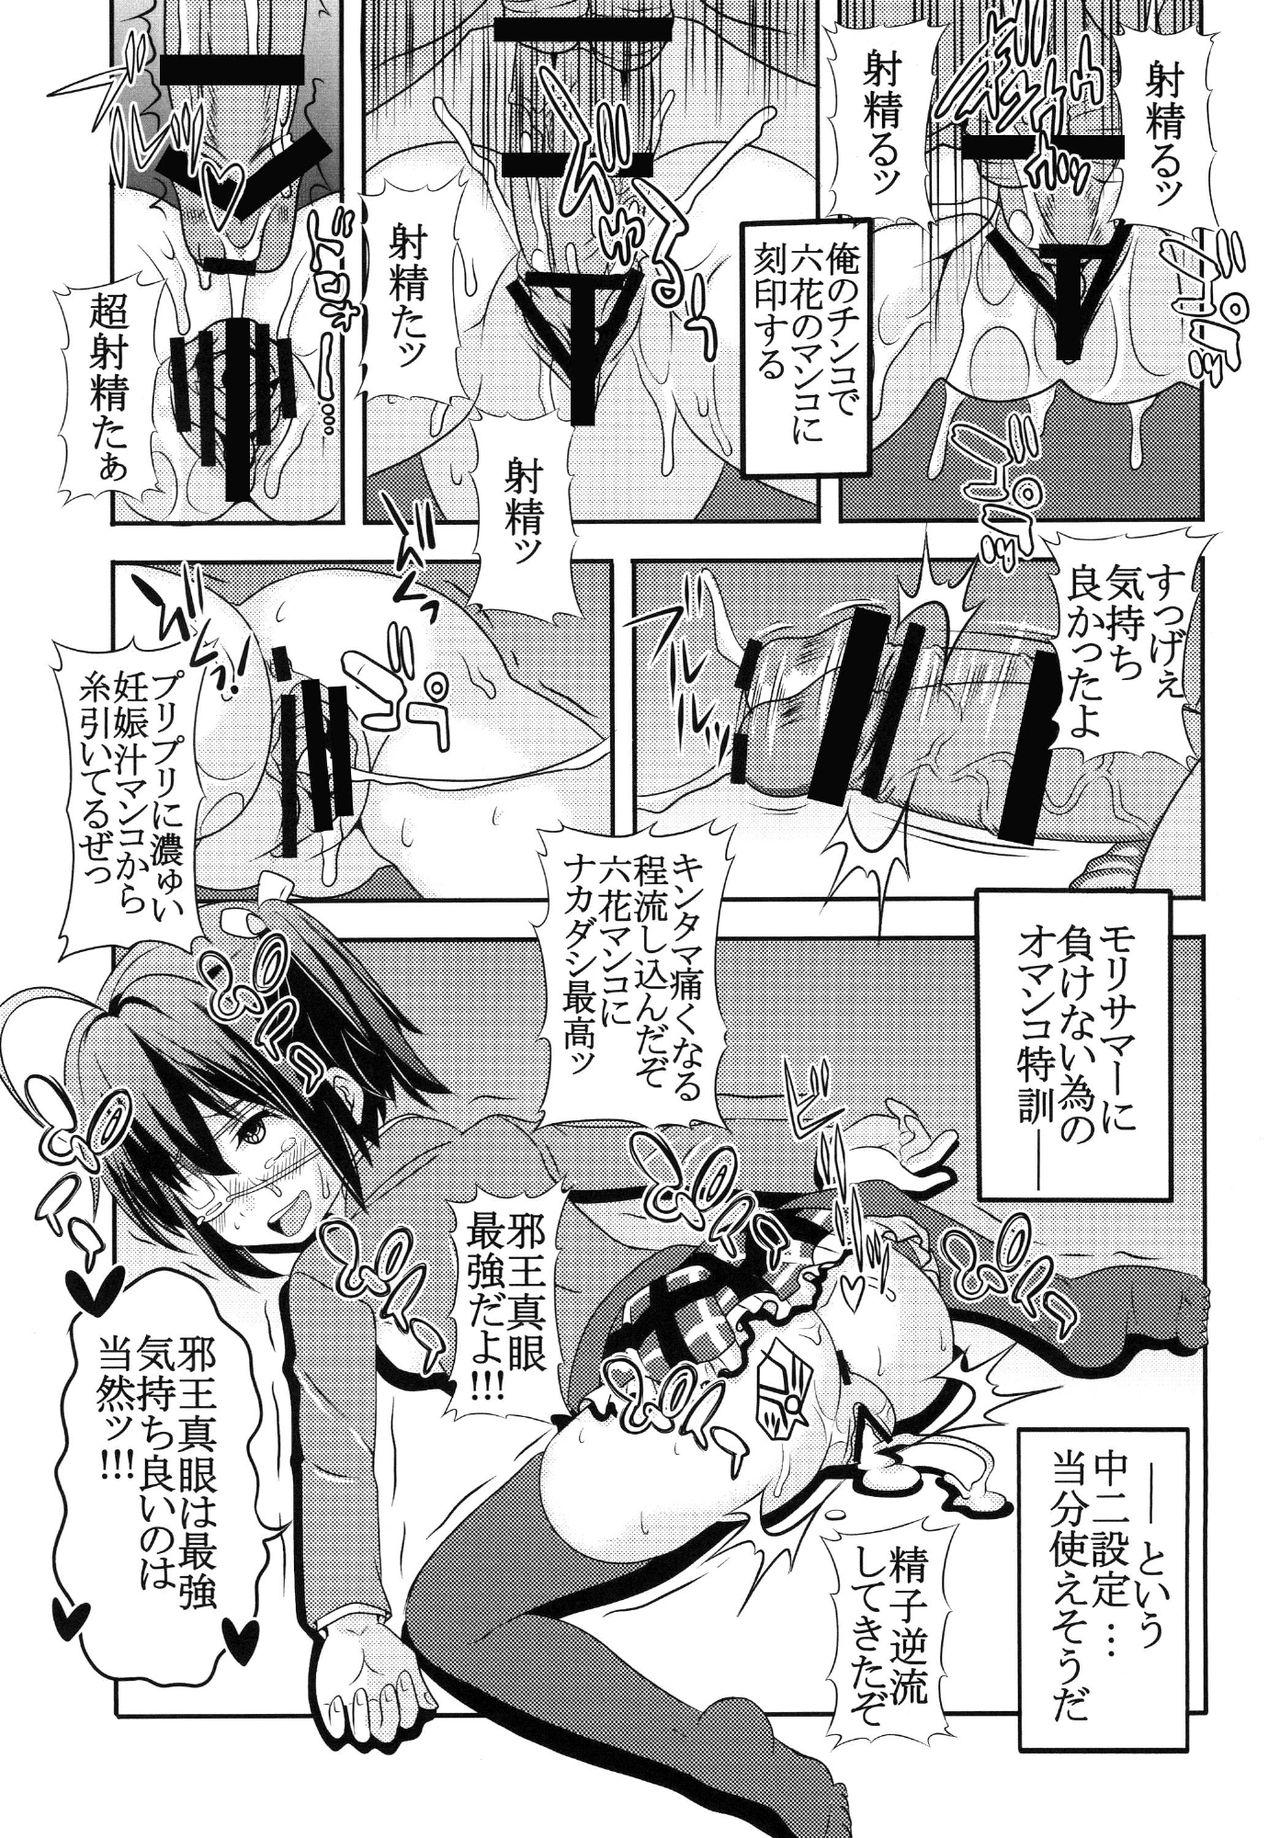 Oral Sex Dekomori Muichaimashita - Chuunibyou demo koi ga shitai Tanned - Page 11